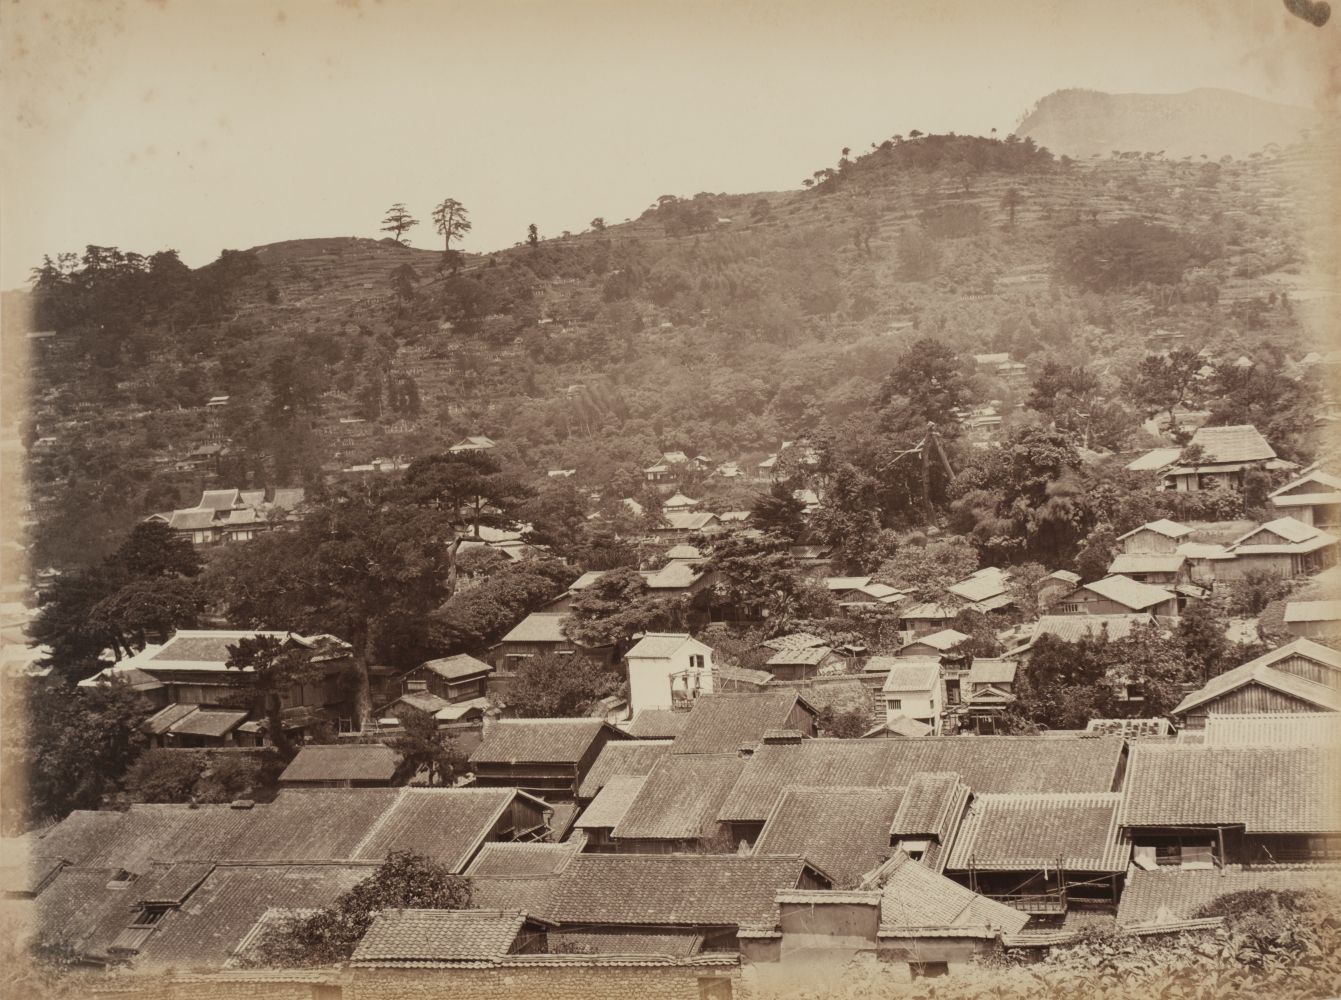 * Attrib. to Charles Leander Weed. Country View near Nagasaky, [Nagasaki, Japan], c. 1867